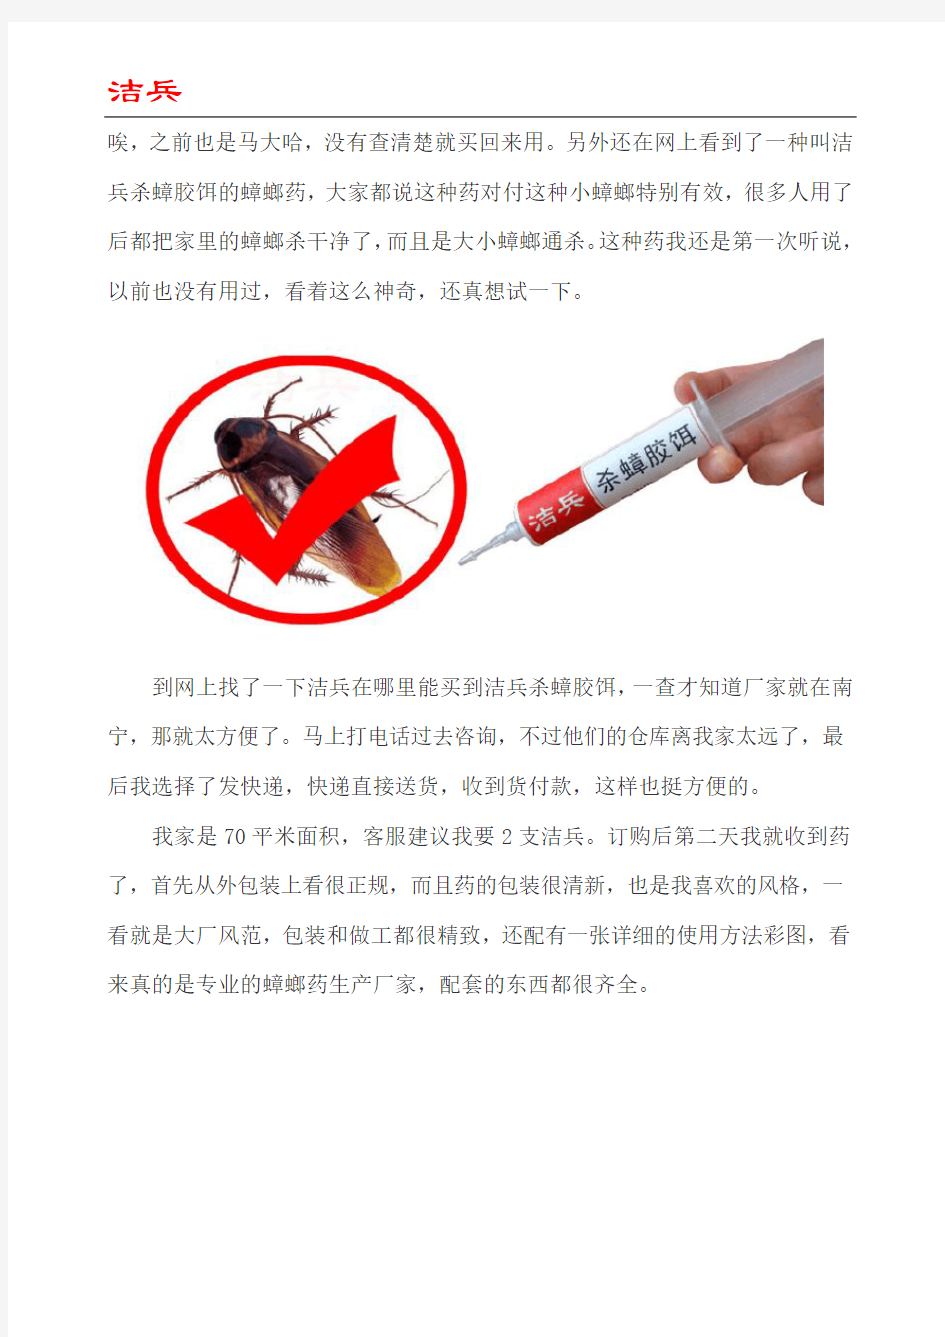 北京家庭灭蟑螂的经验分享